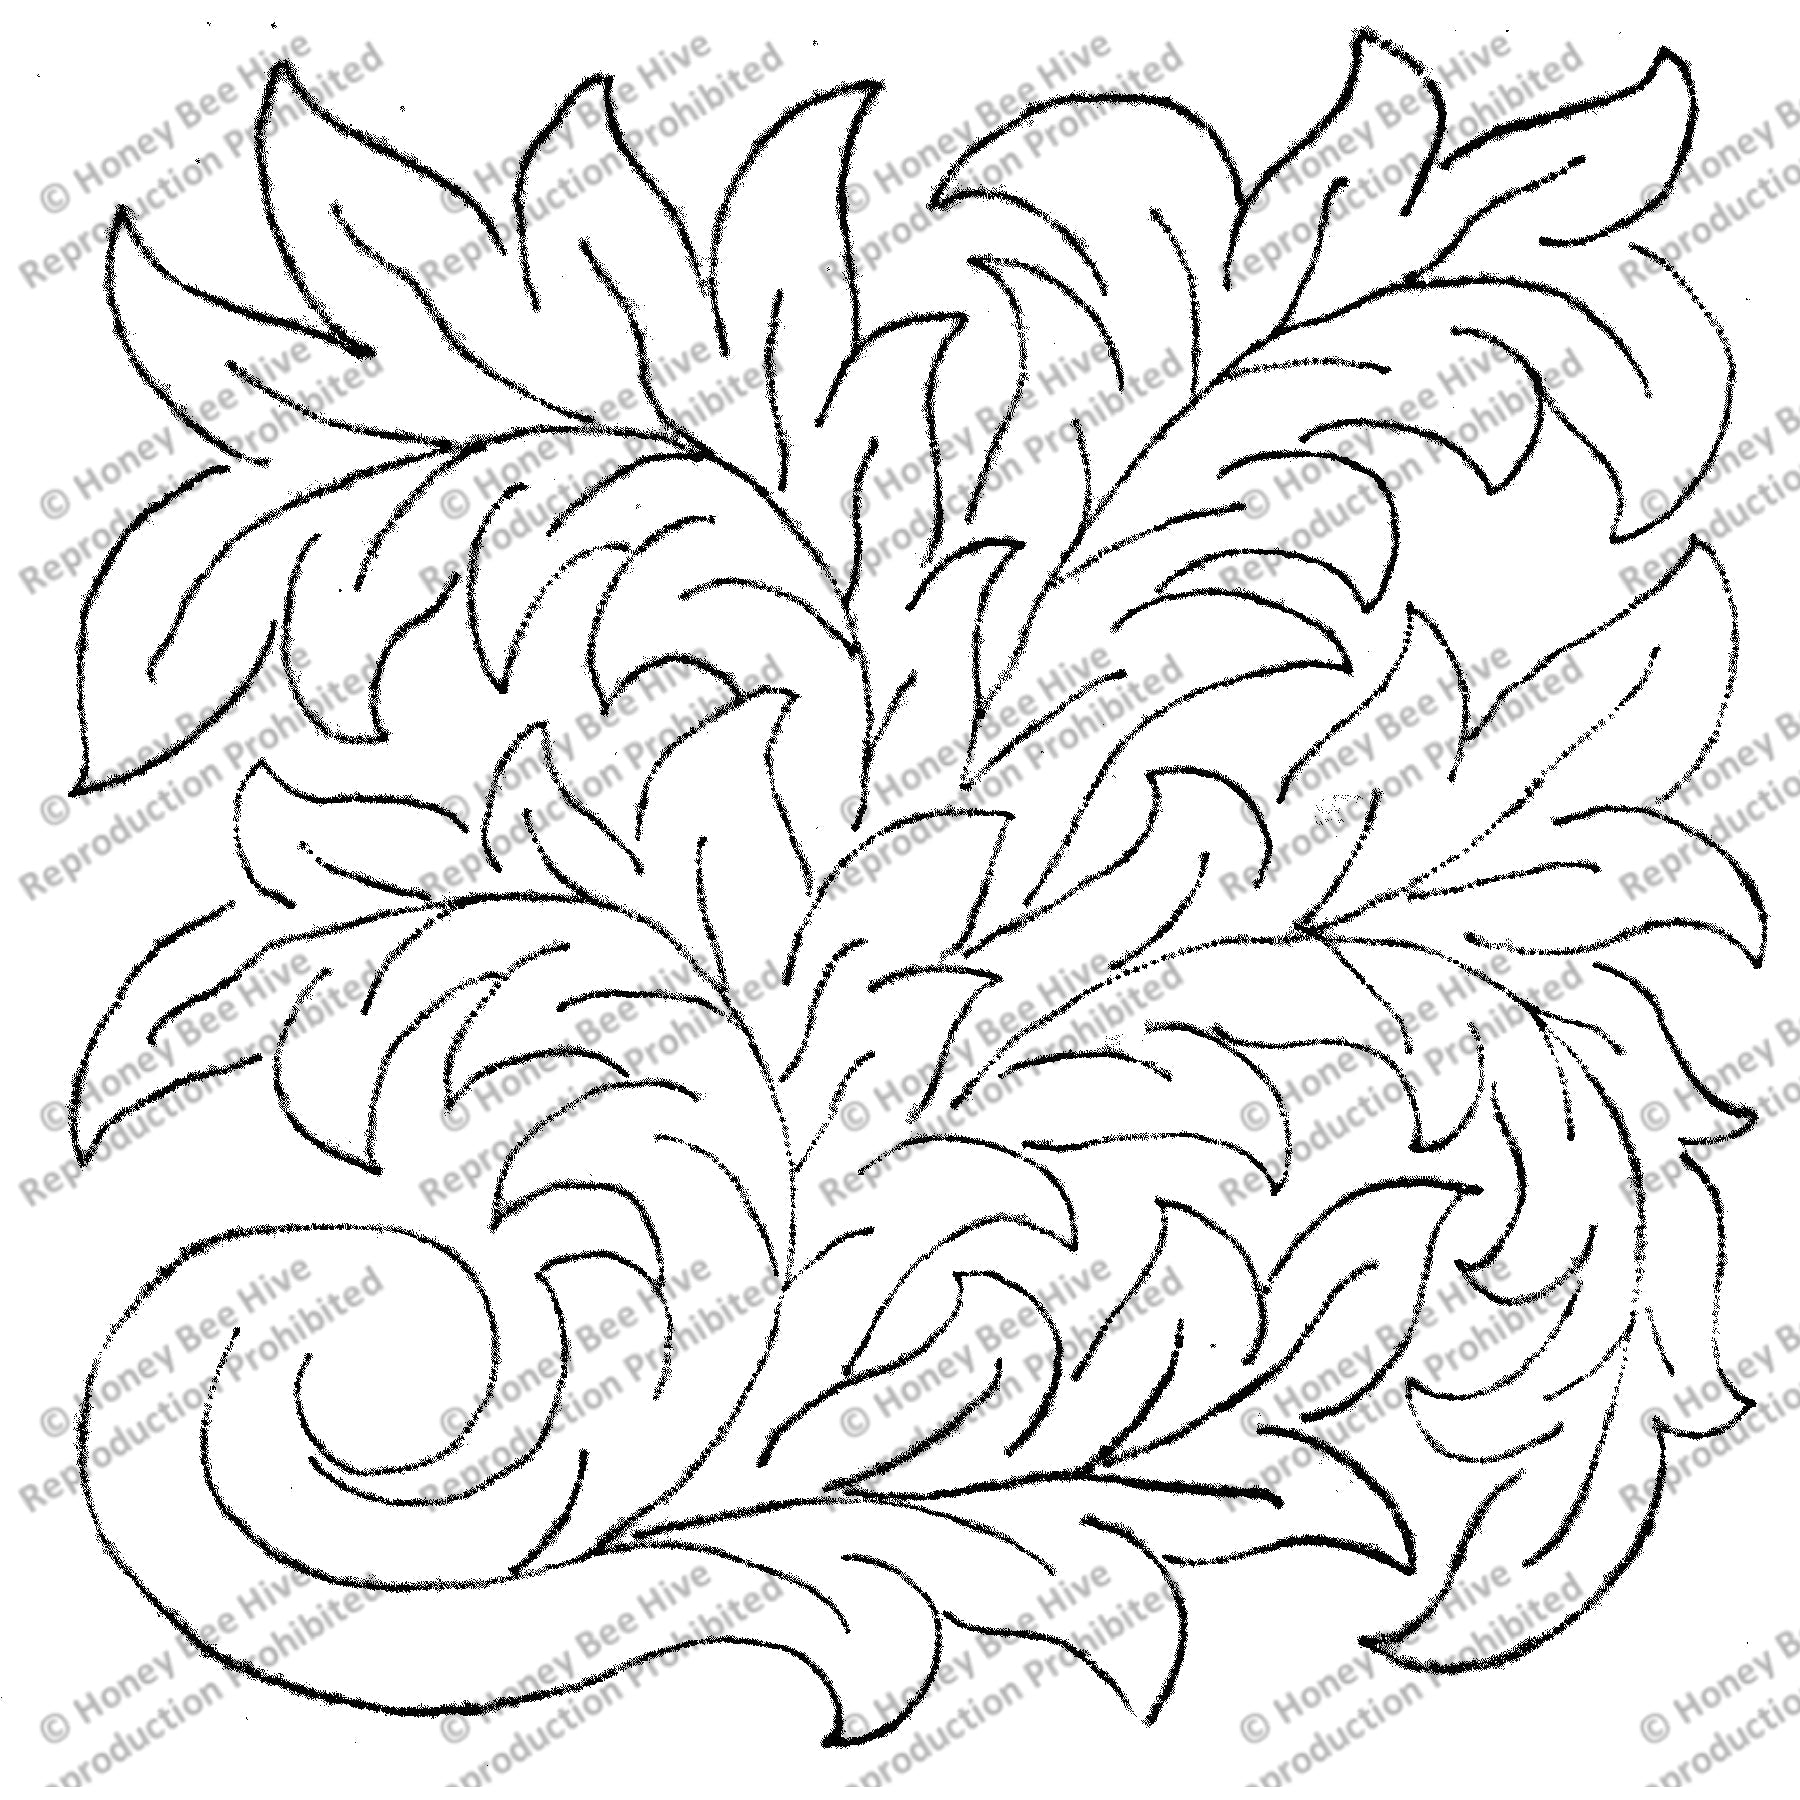 Scrolls/Practice, rug hooking pattern